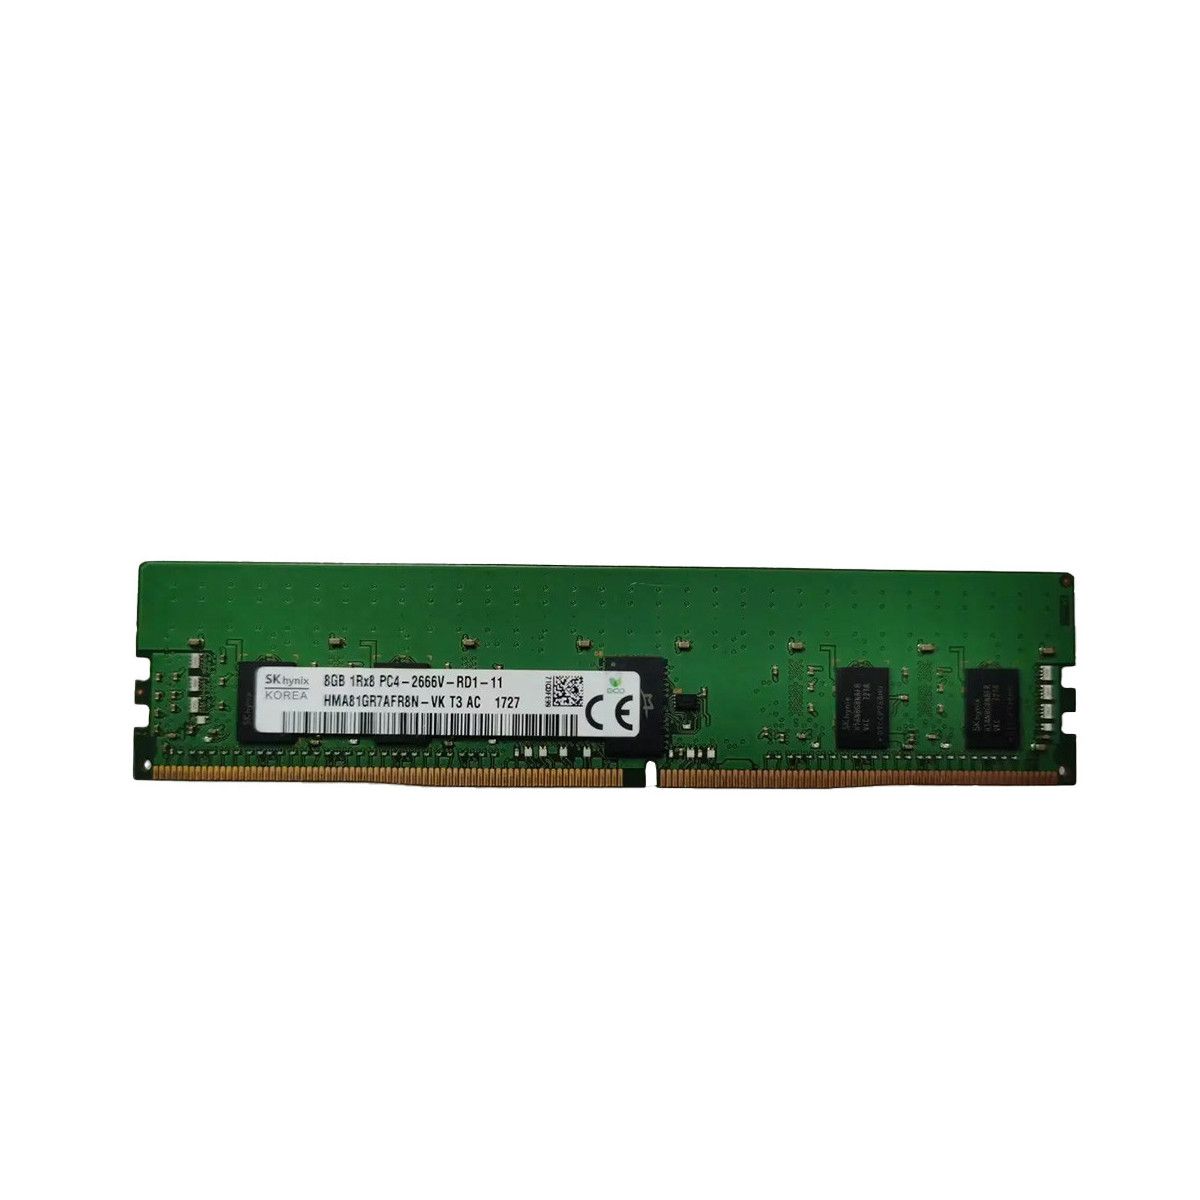 850879-001-MS - Memstar 1x 8GB DDR4-2666 RDIMM PC4-21300V-R - Mem-Star Kompatybilna pamięć OEM 1 - Memstar 